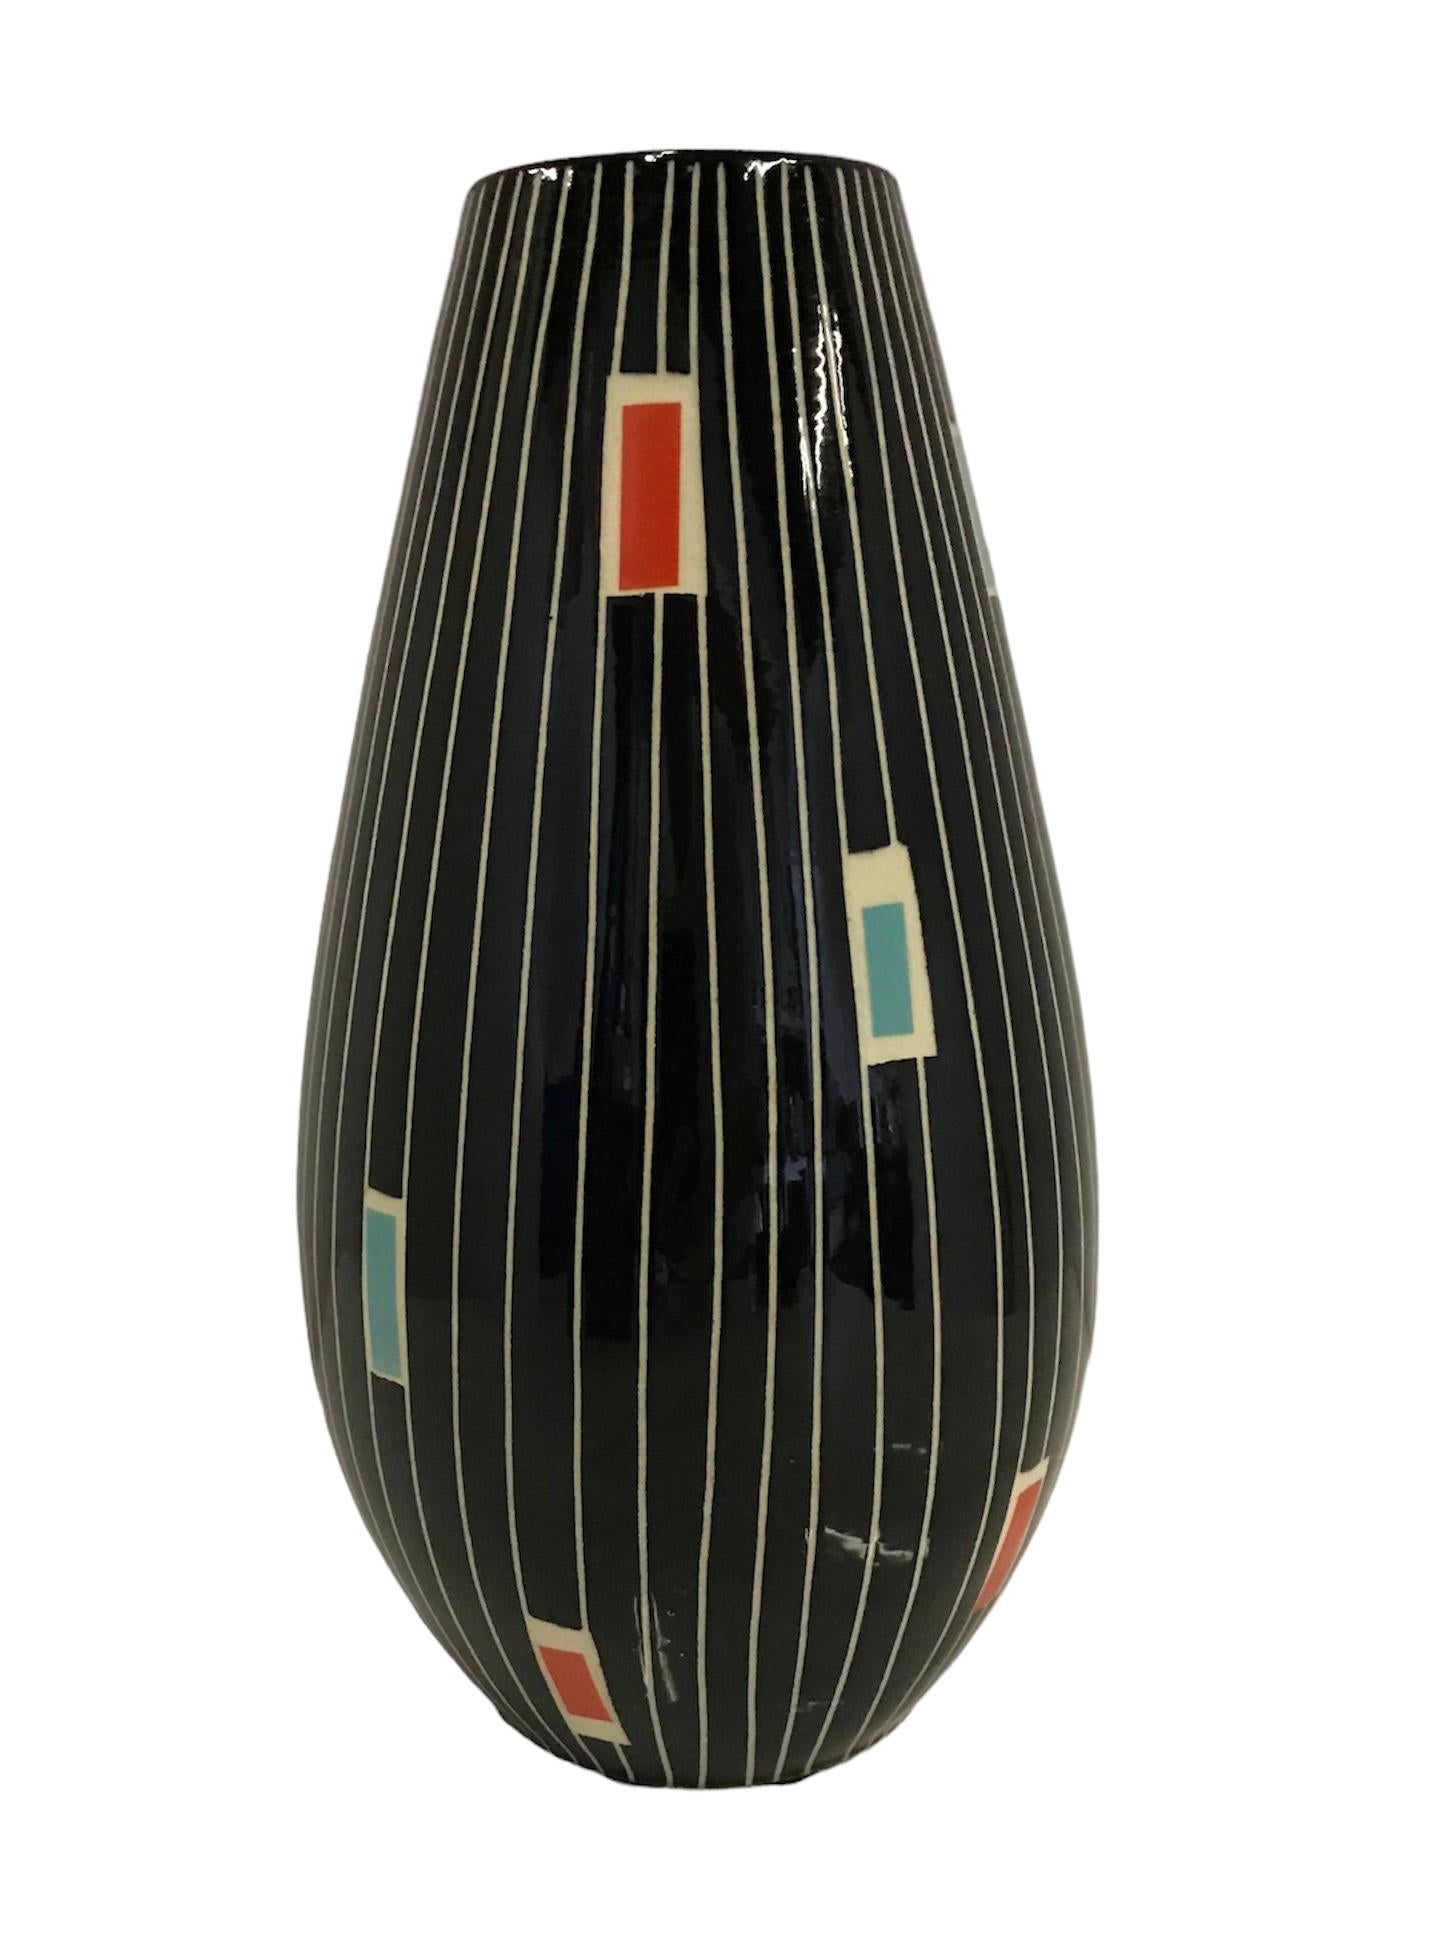 Un certain nombre de rectangles colorés sur des lignes blanches perpendiculaires incisées sur une
Le fond noir brillant de la glaçure définit ce vase de style moderne du milieu du siècle dernier.
Üebelacker-Keramik, également connu sous le nom